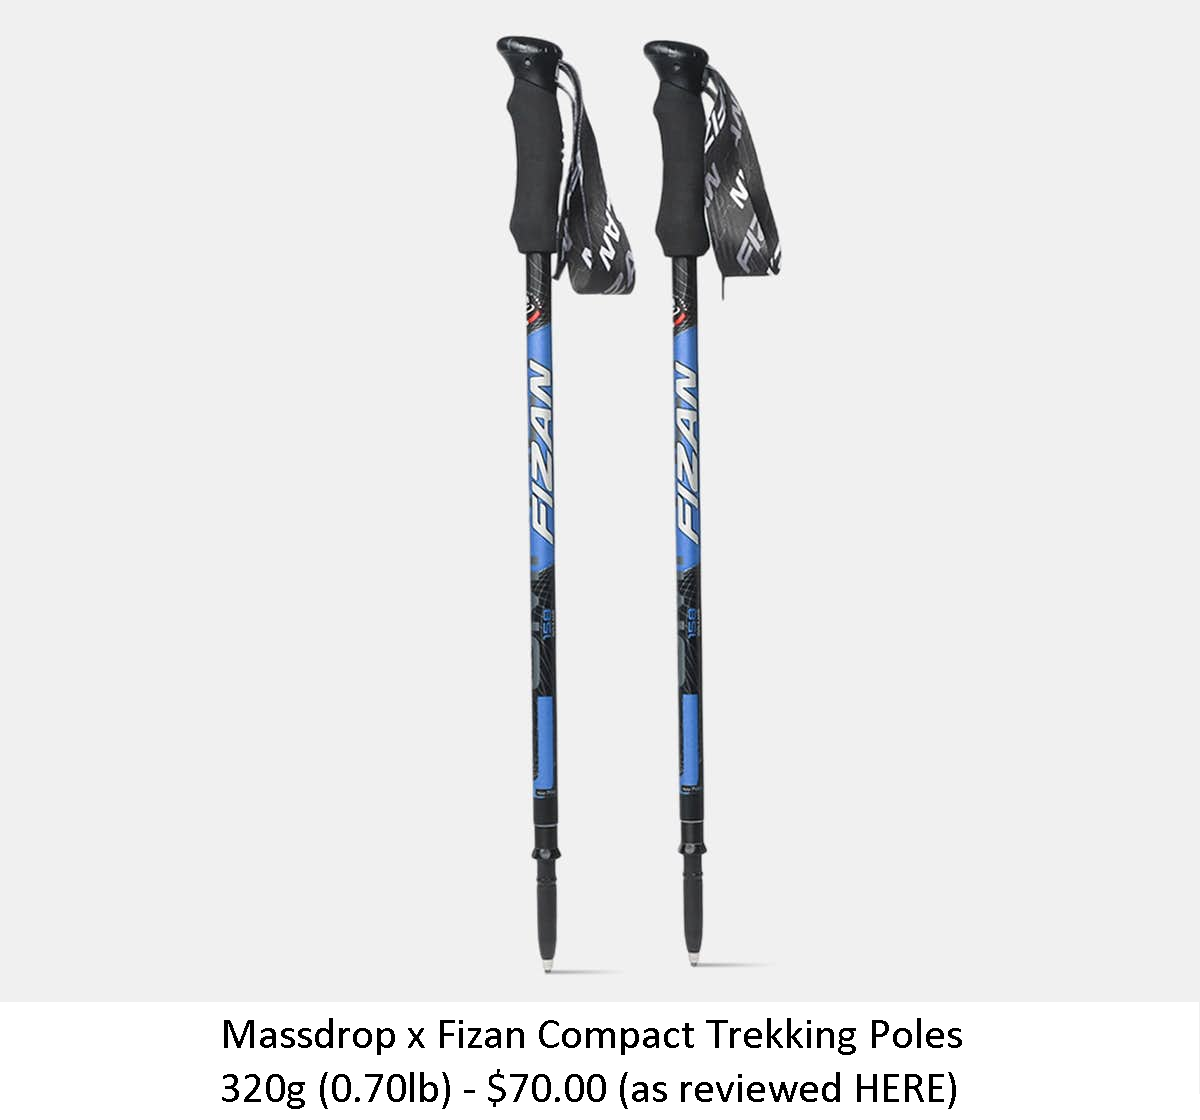 Massdrop x Fizan Compact Trekking Poles